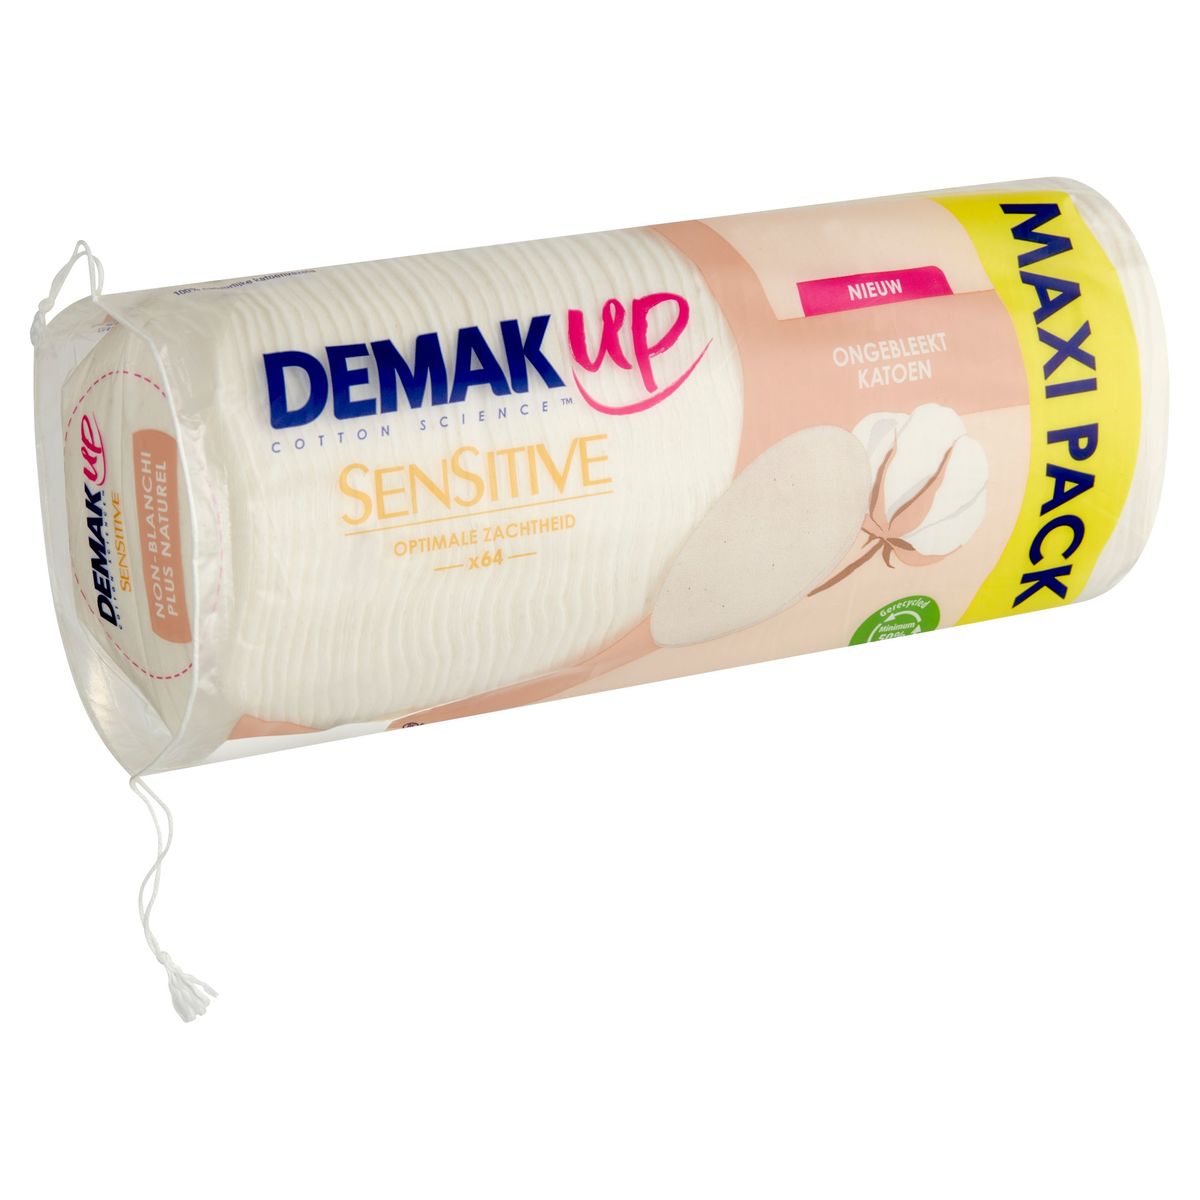 Demak'Up Sensitive Douceur Optimale Maxi Pack 64 Pièces